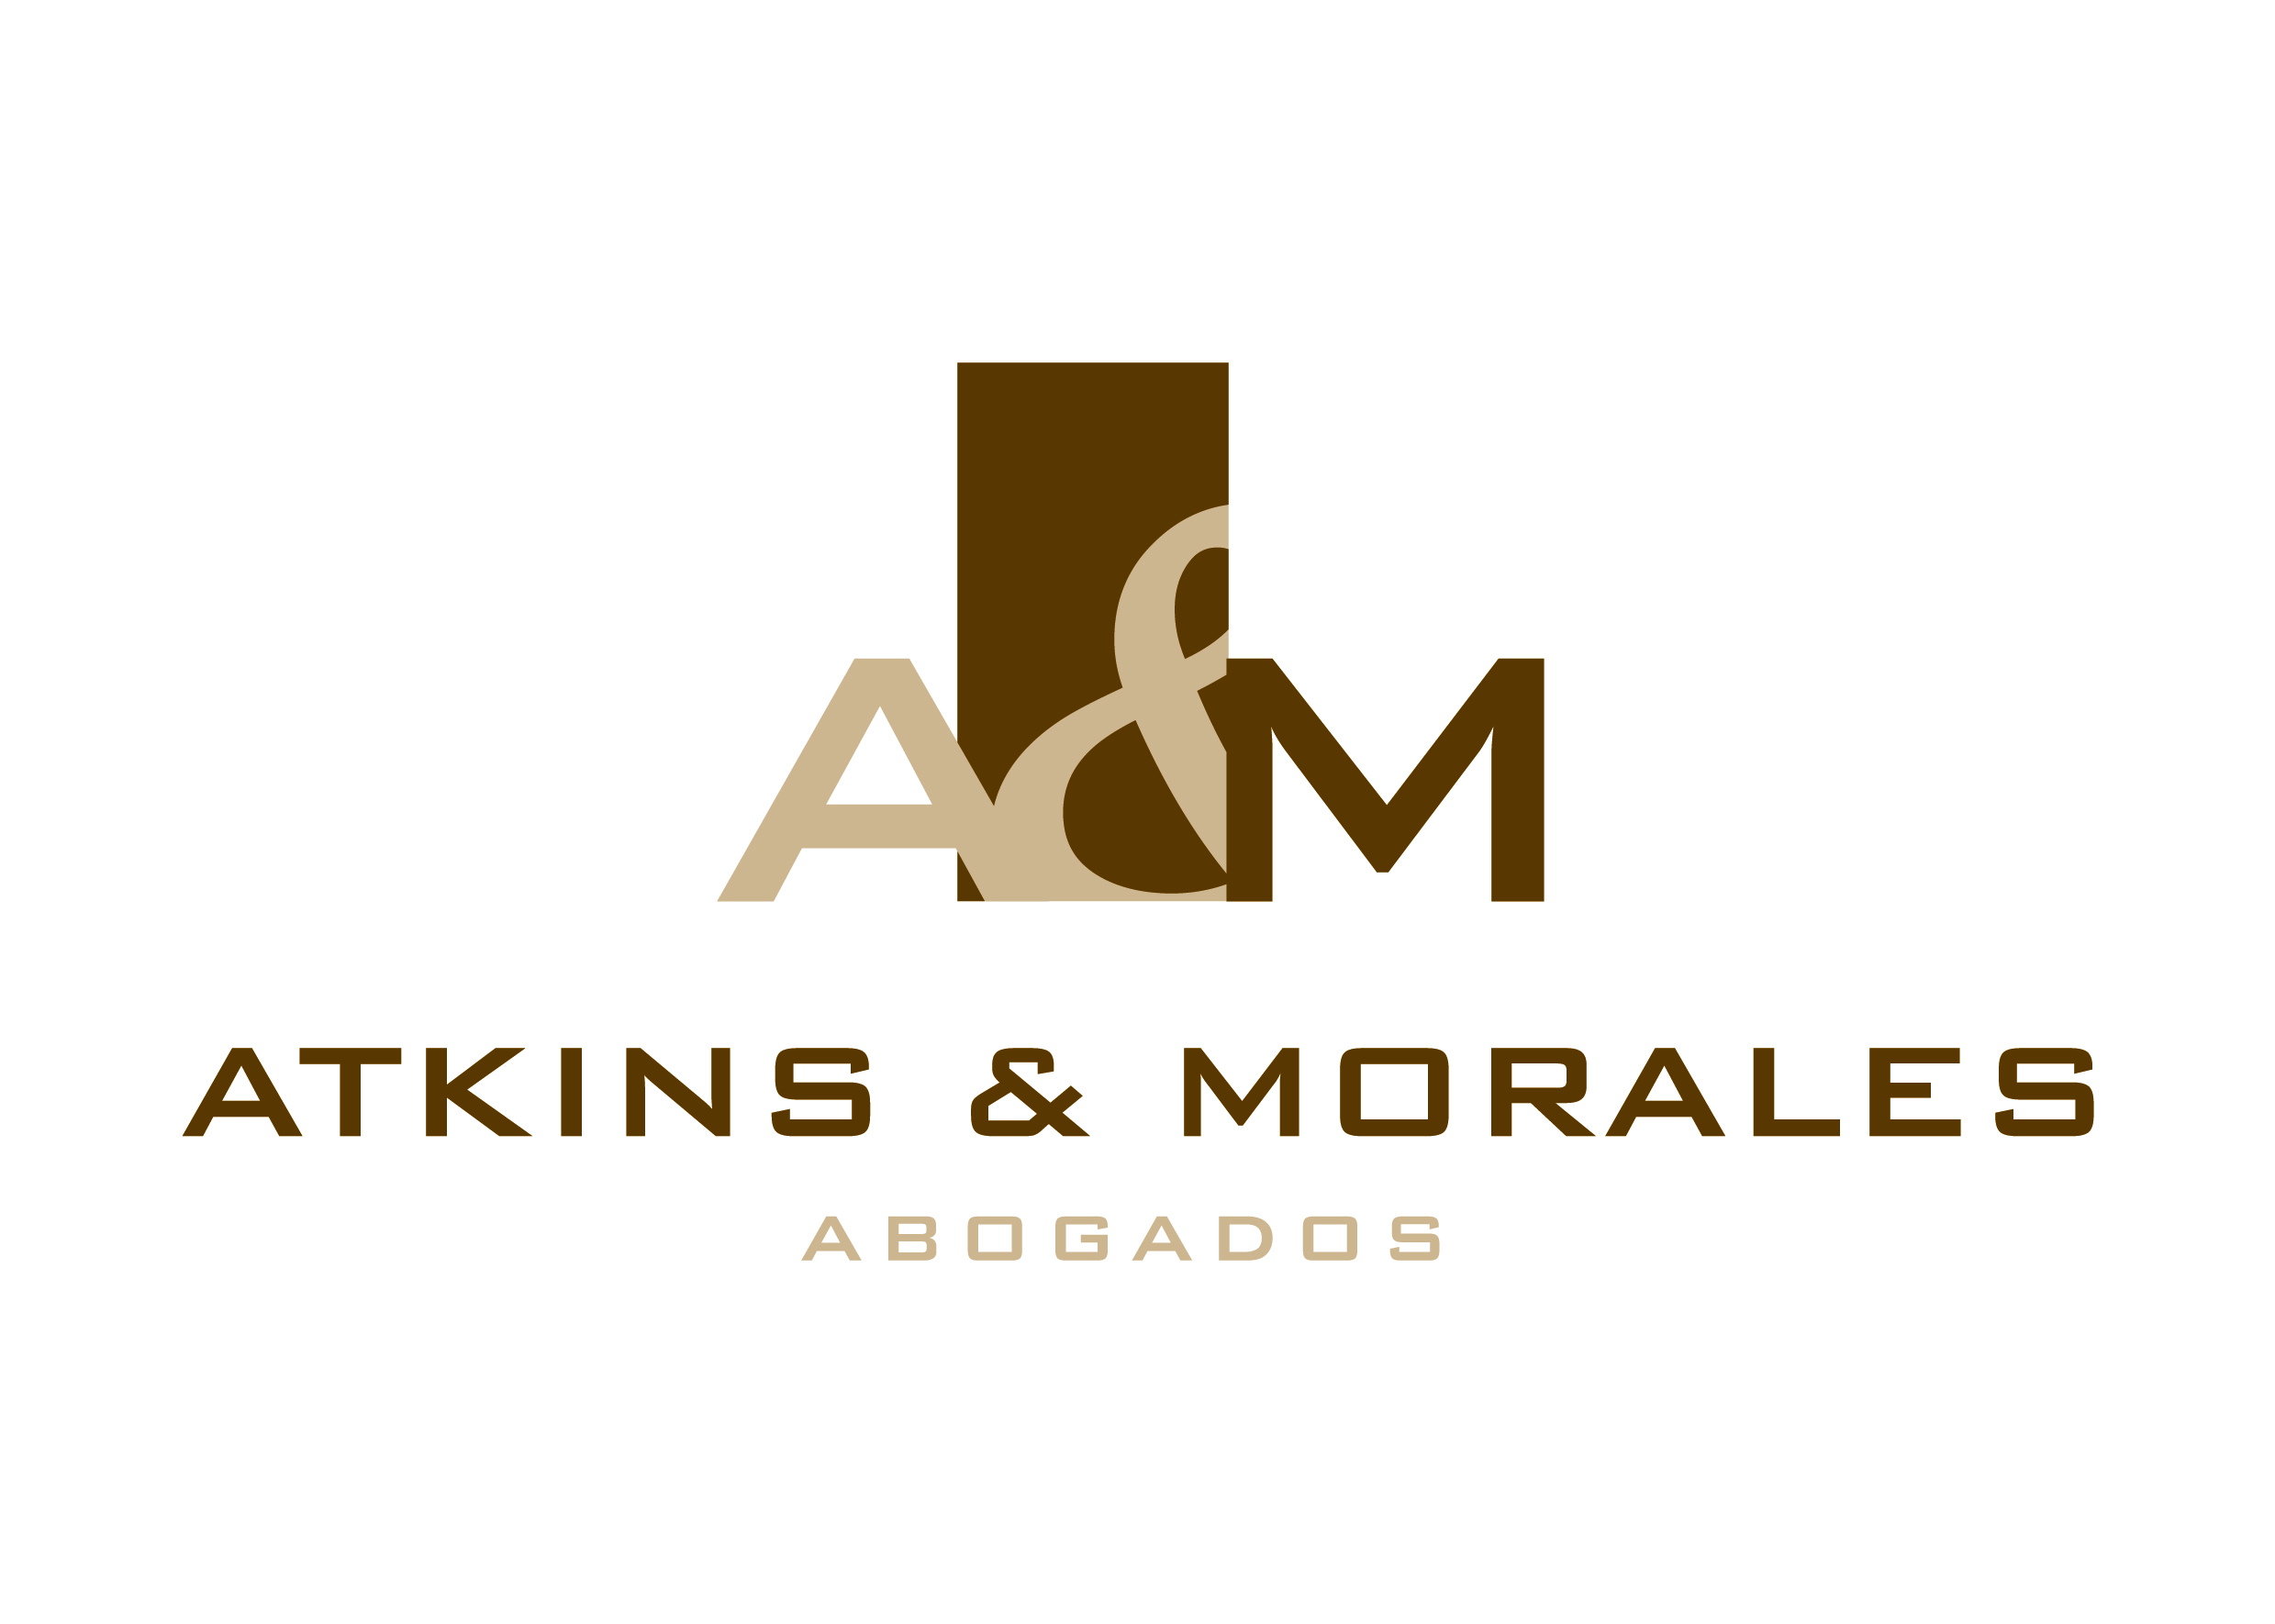 Atkins & Morales Abogados